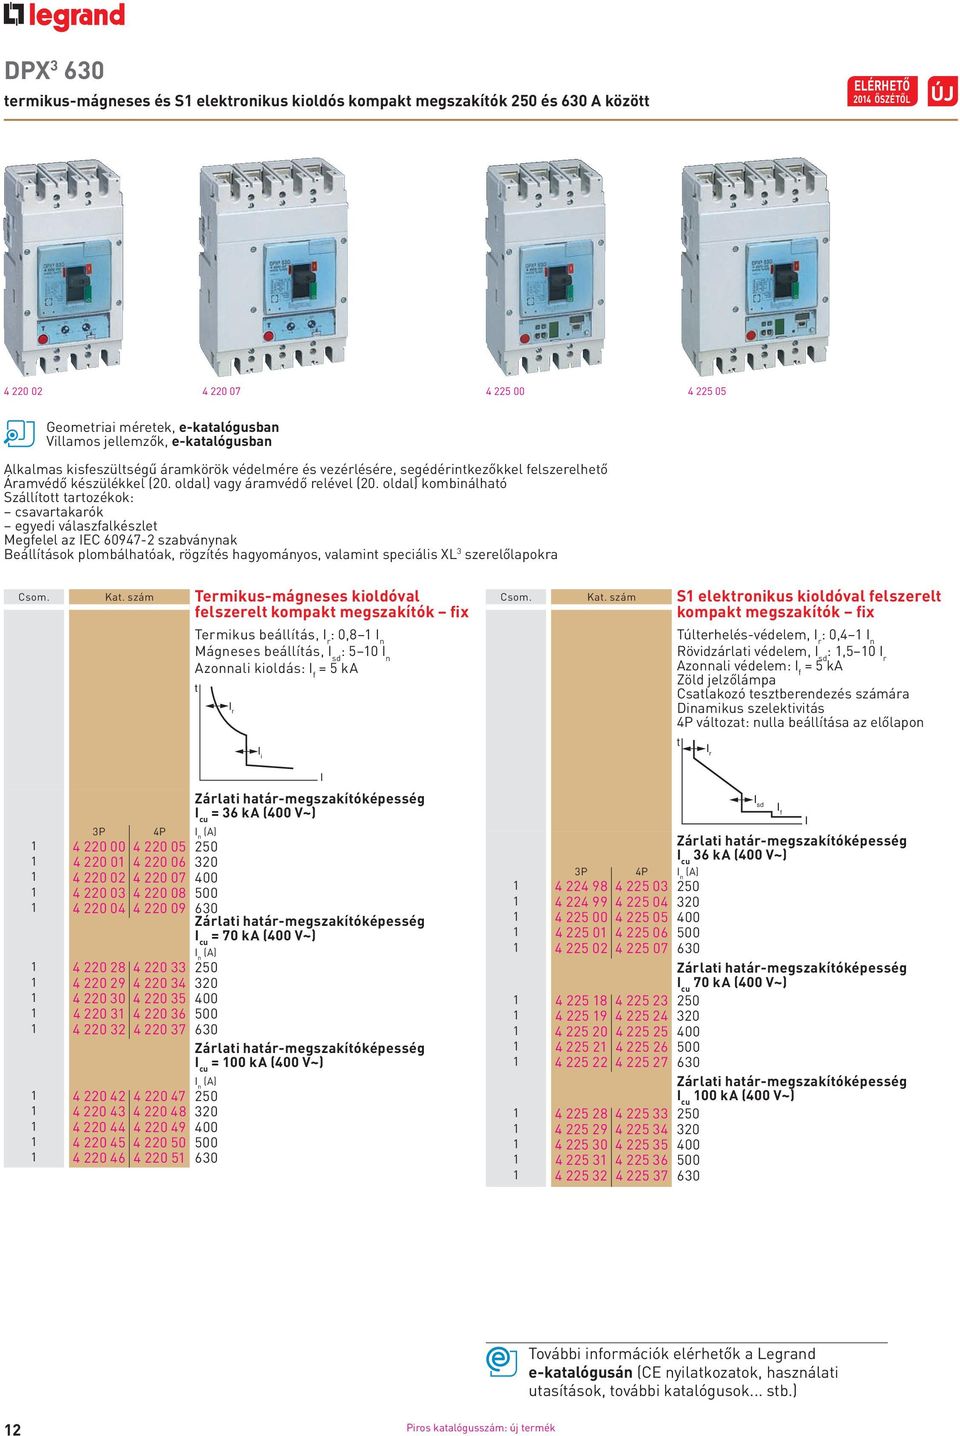 oldal) kombinálható Szállított tartozékok: csavartakarók egyedi válaszfalkészlet Megfelel az IEC 60947-2 szabványnak Beállítások plombálhatóak, rögzítés hagyományos, valamint speciális XL 3